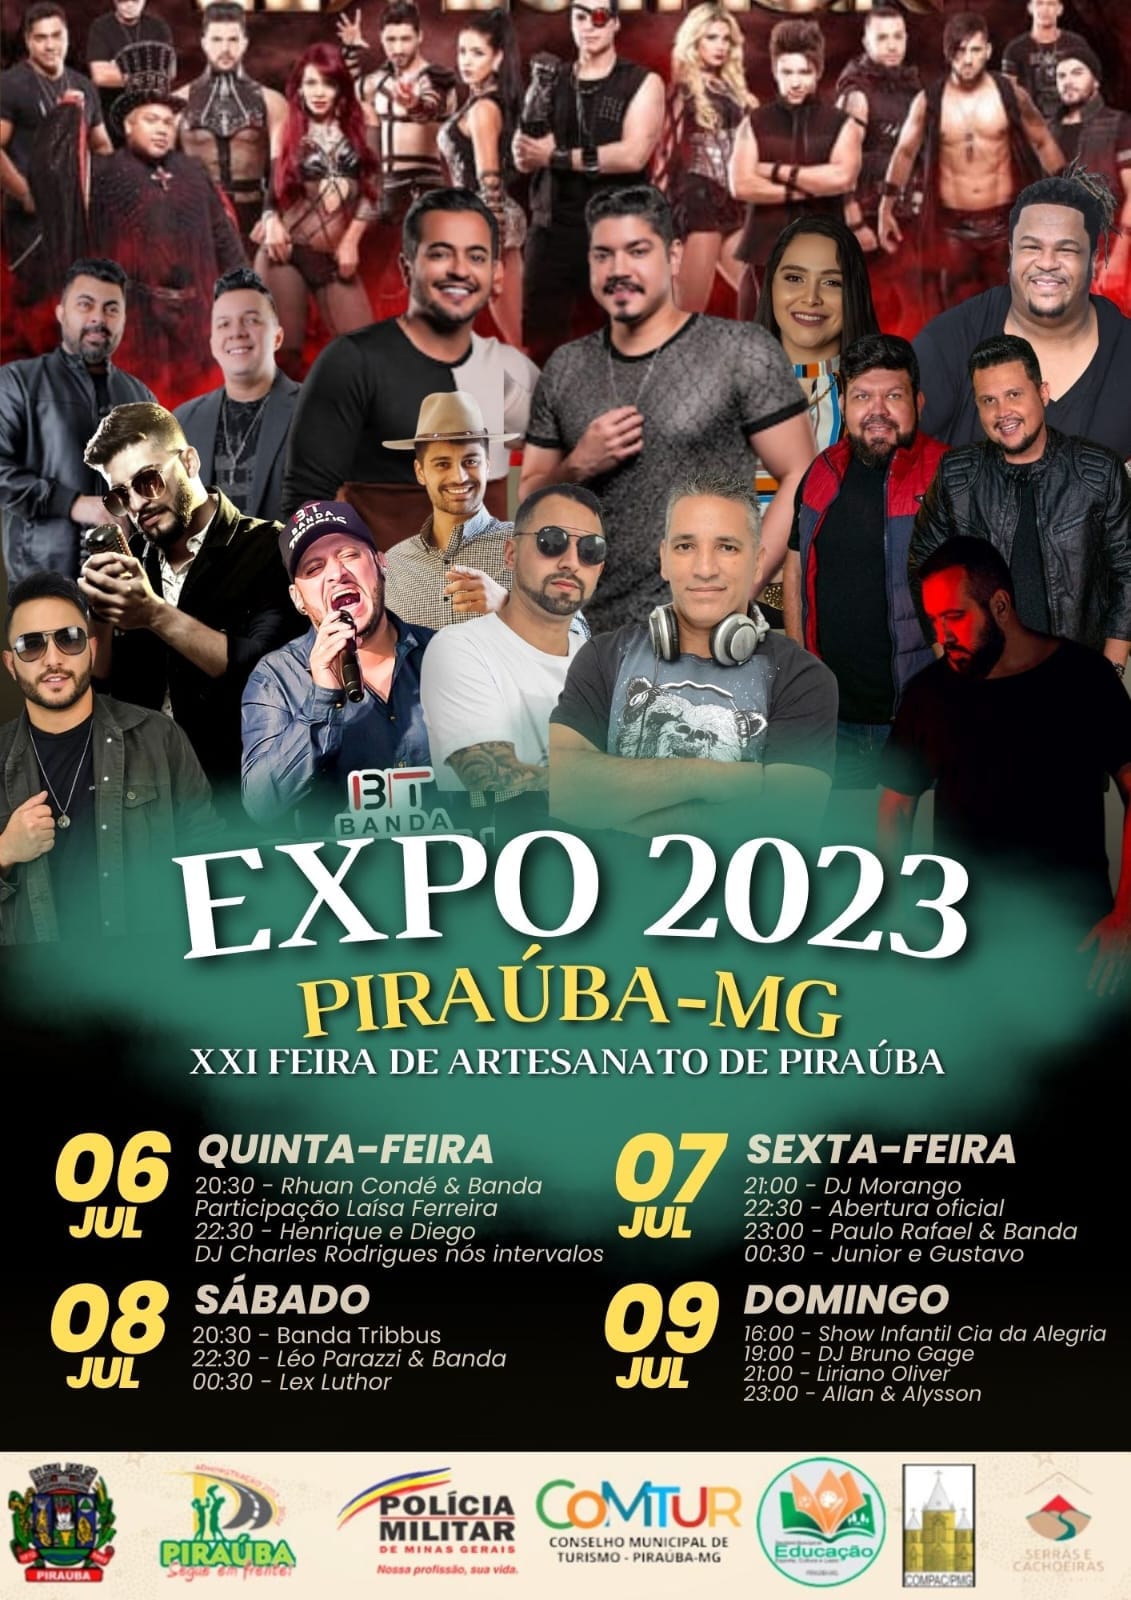 PROGRAMAÇÃO COMPLETA DA EXPO 2023